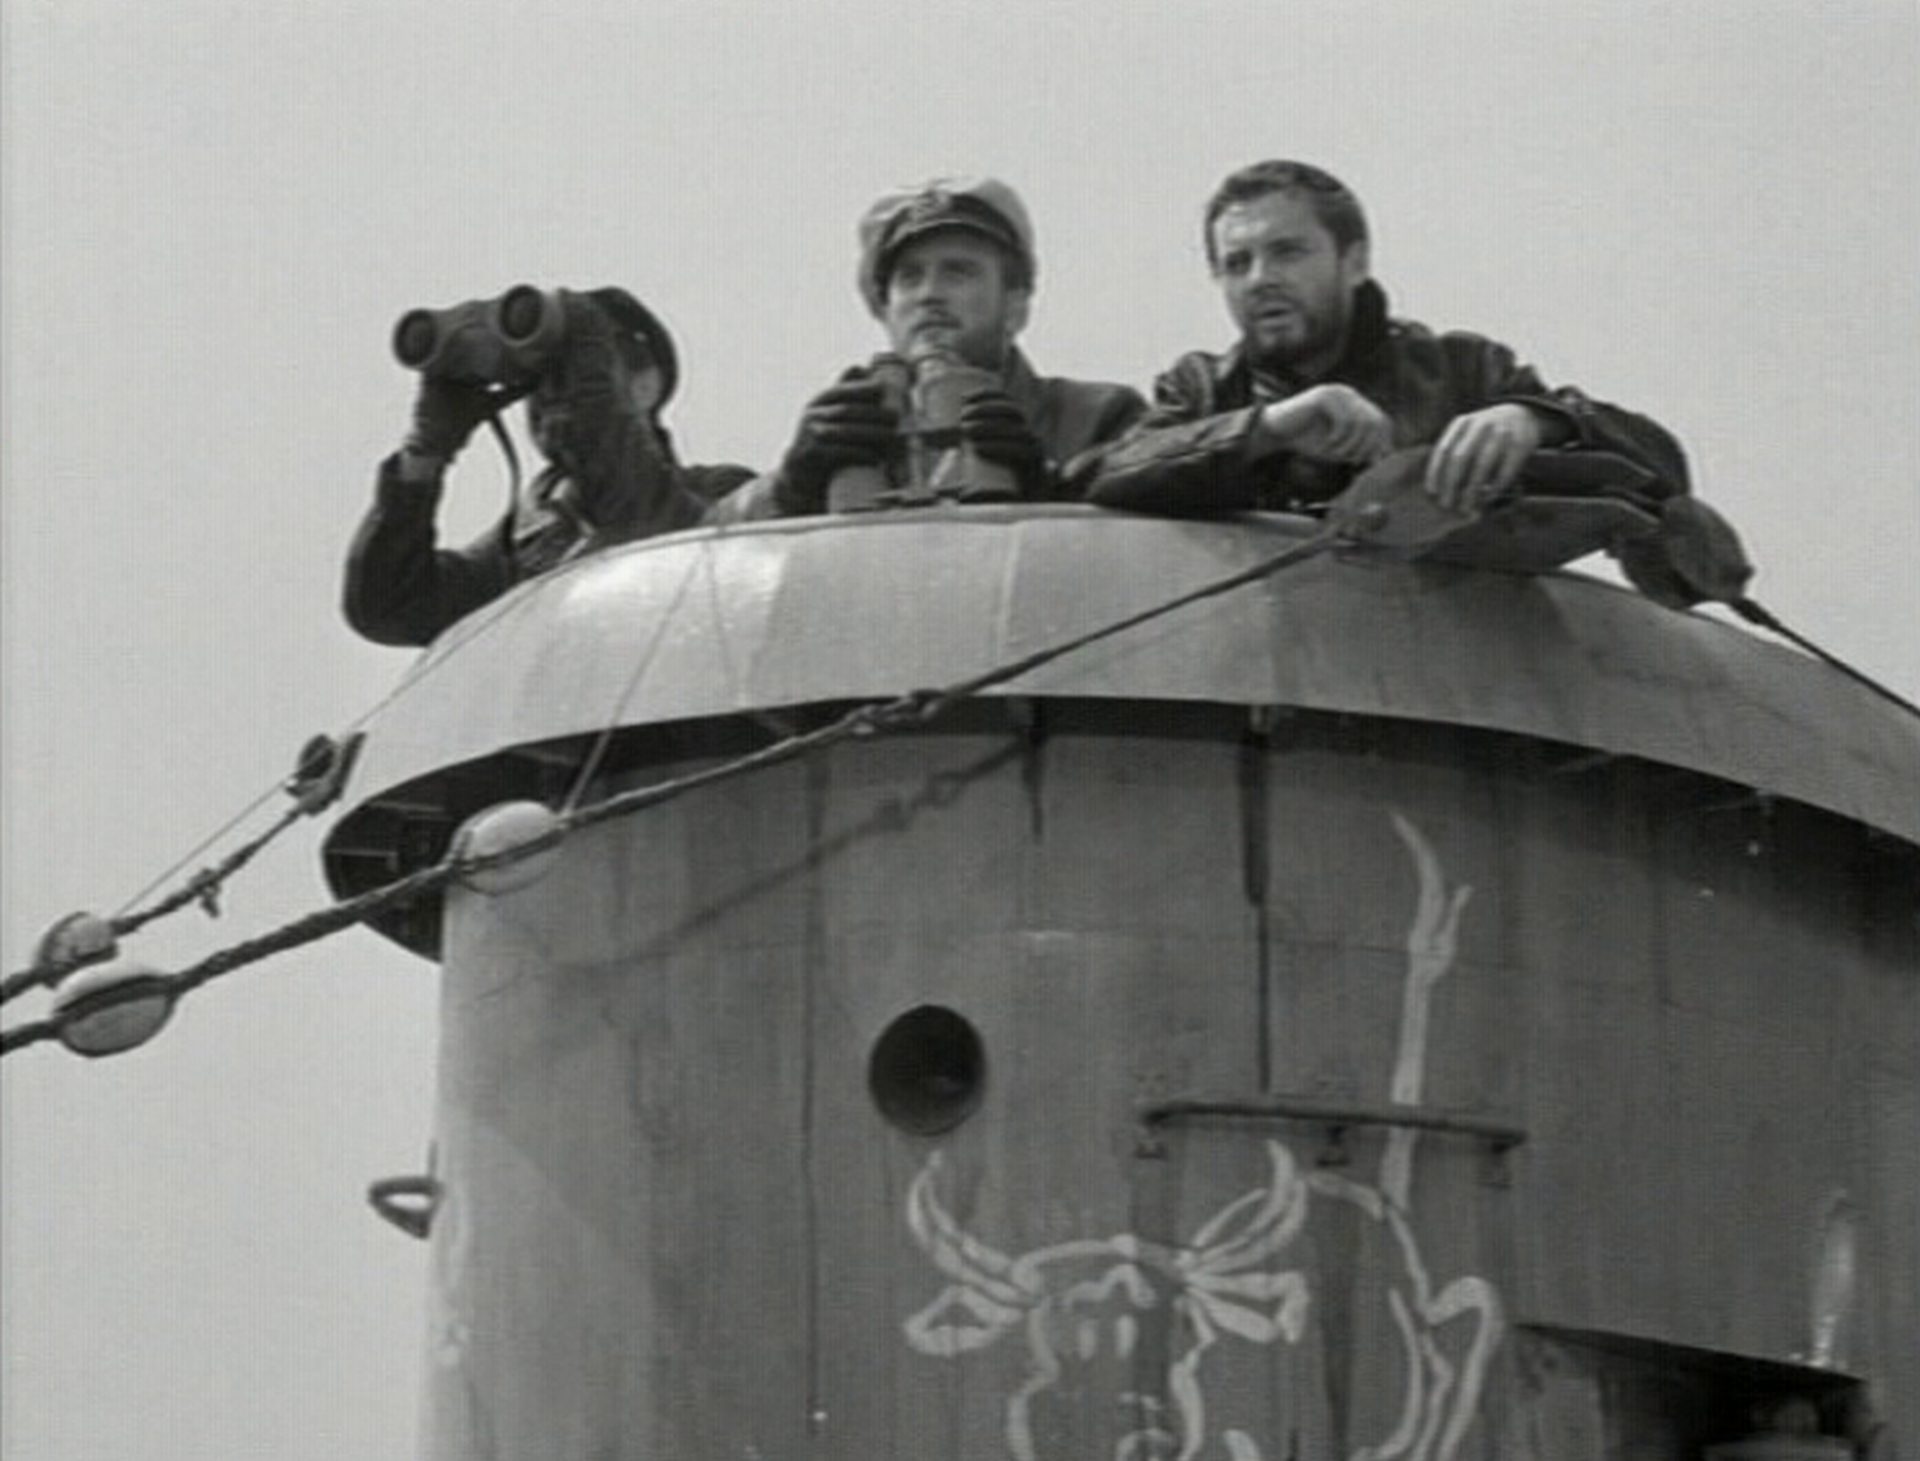 Schwarz-Weiß-Aufnahme von Dieter Eppler als U-Boot-Kommandant Günther Prien im Ausguck der U-47 mit abgesetztem Fernglas, zu beiden Seiten jeweils einer seiner Seeleute, einer davon mit angesetztem Fernglas; der Turm trägt einen mit weißen Konturen aufgemalten Stier als Maskottchen.